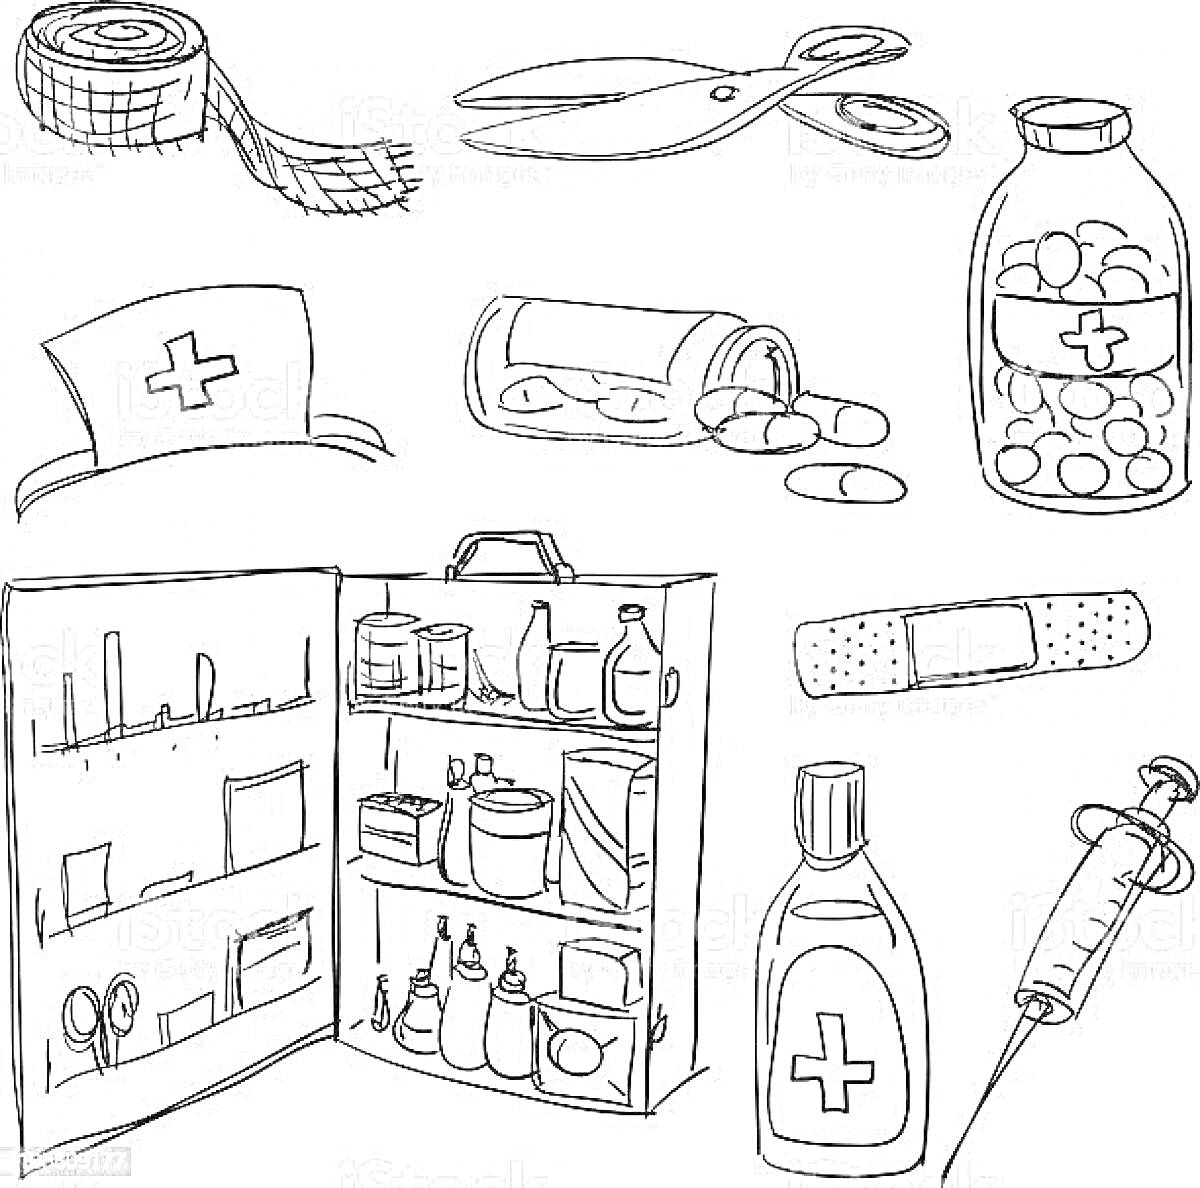 Аптечка с содержимым, скотч, ножницы, пузырек с таблетками, шапочка медсестры, контейнер с таблетками, пластырь, бутылочка с жидкостью, шприц